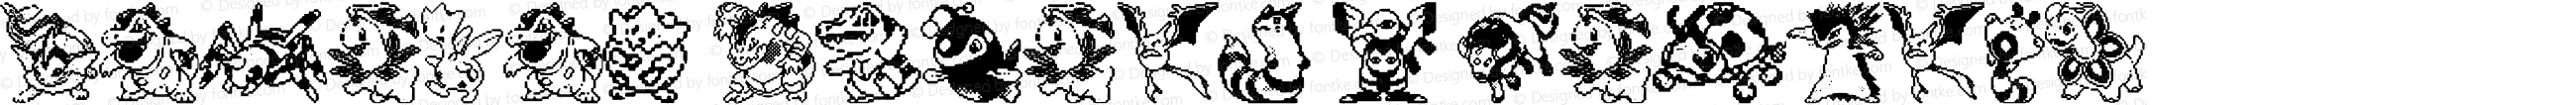 Pokemon pixels 2